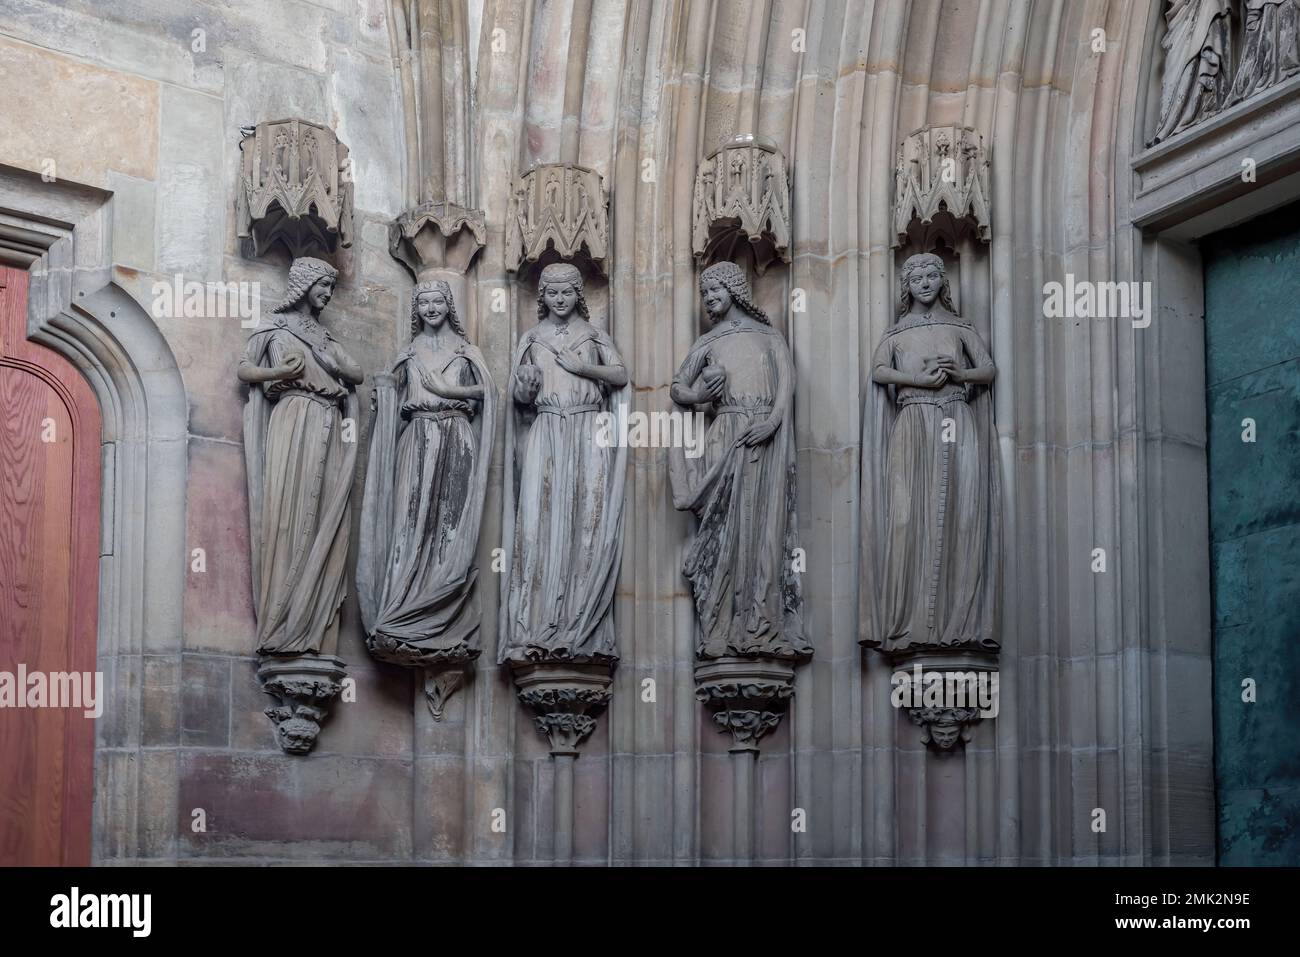 Fünf kluge Jungfrauen zeigen ihre Freudenskulpturen im Inneren des Magdeburger Doms - Magdeburg, Deutschland Stockfoto